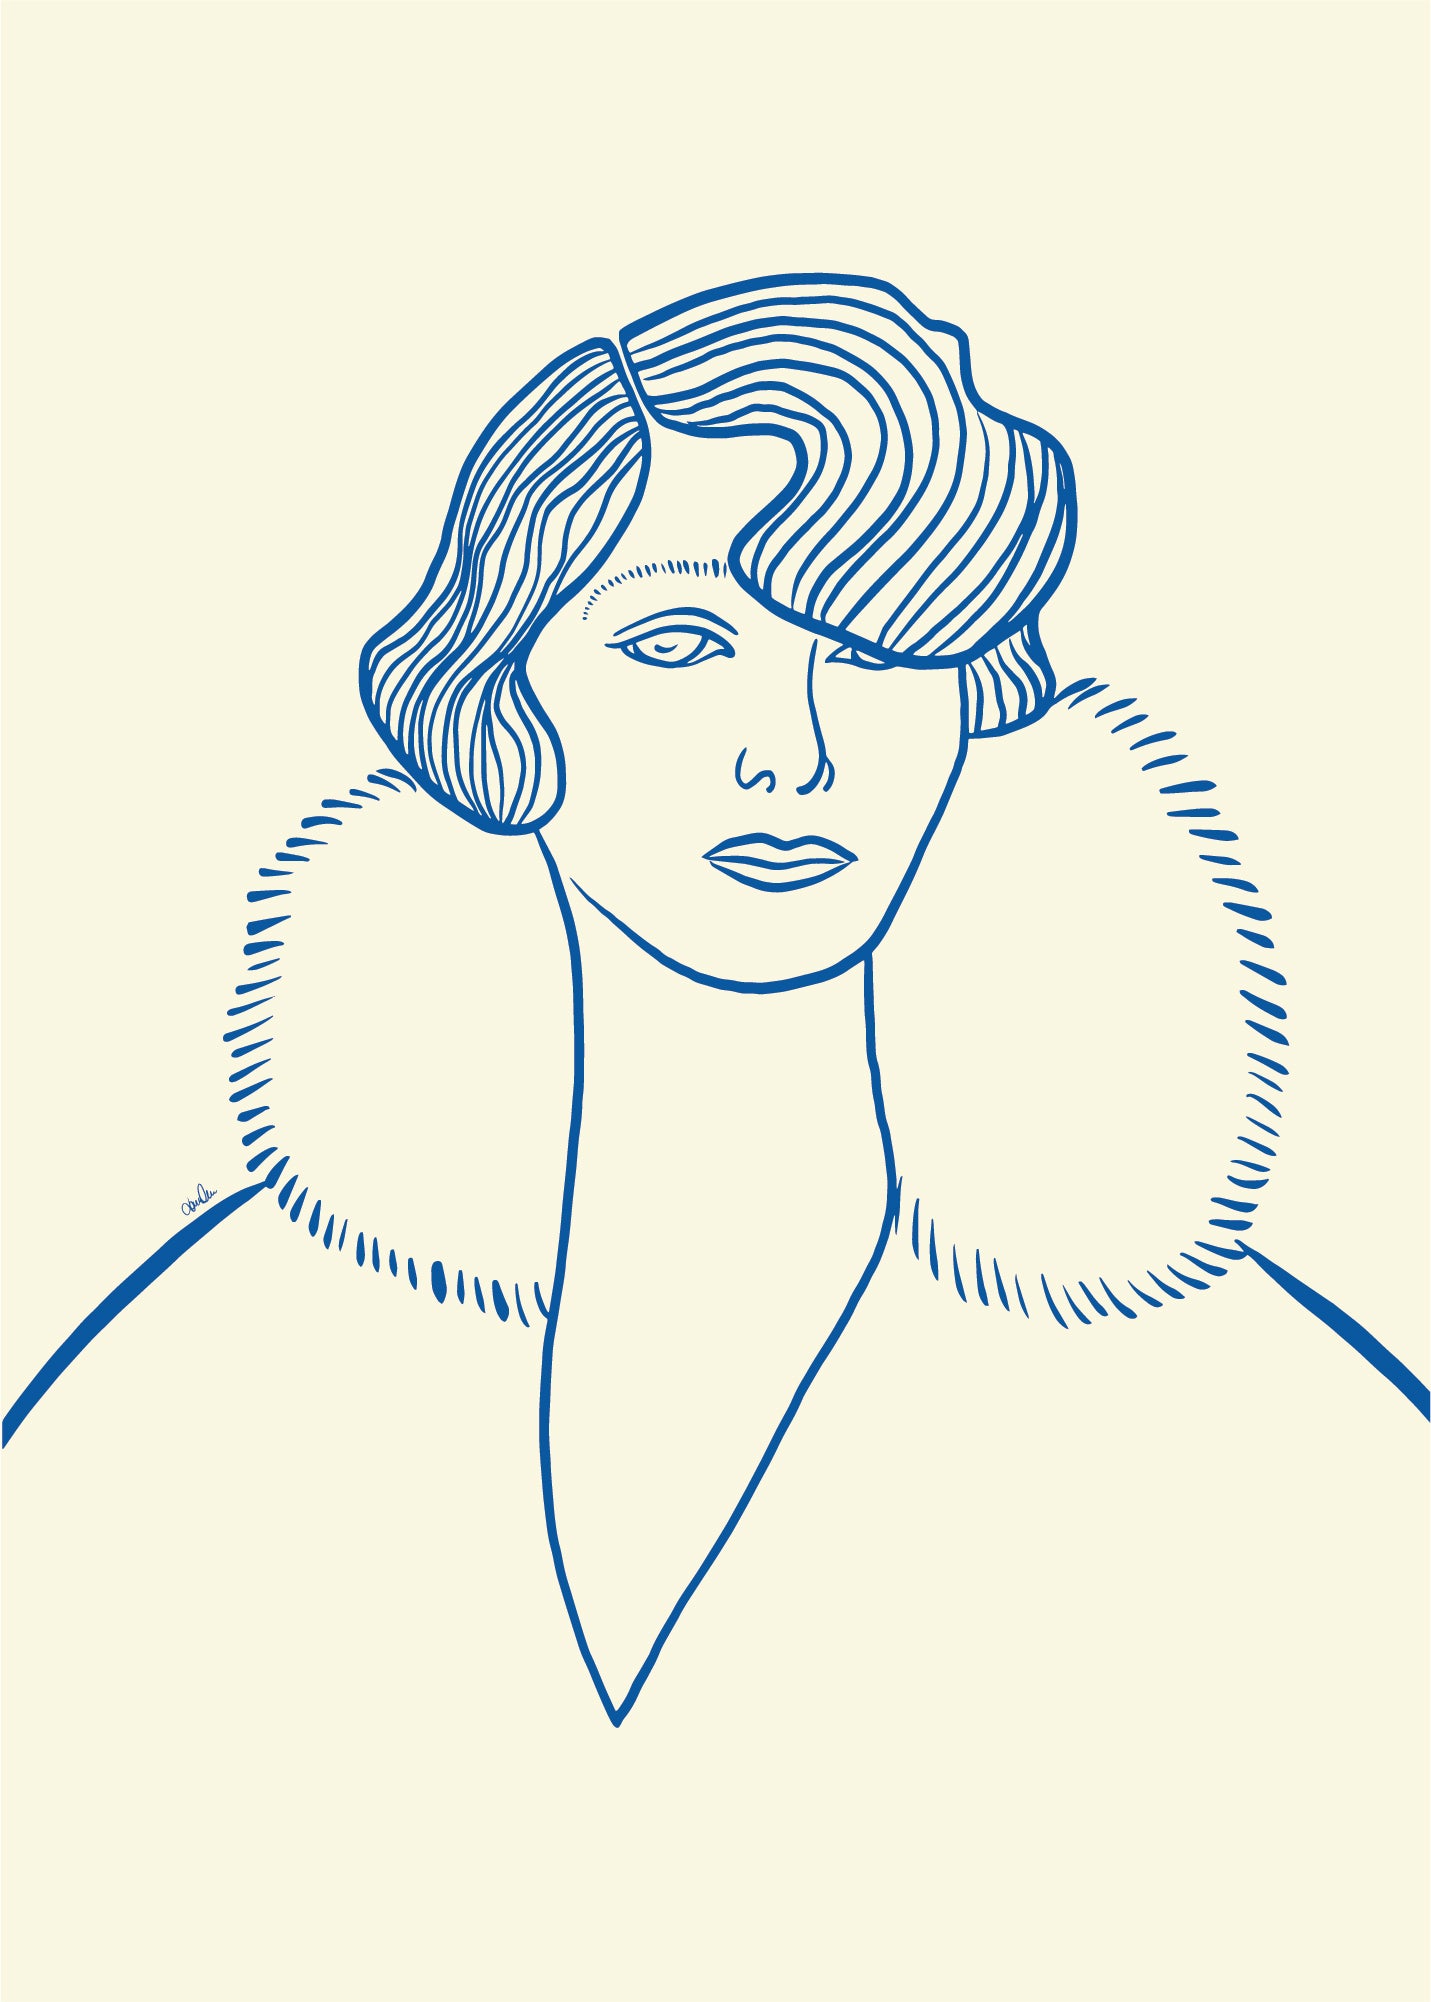 Strektegning av kvinne i blåtoner. Poster